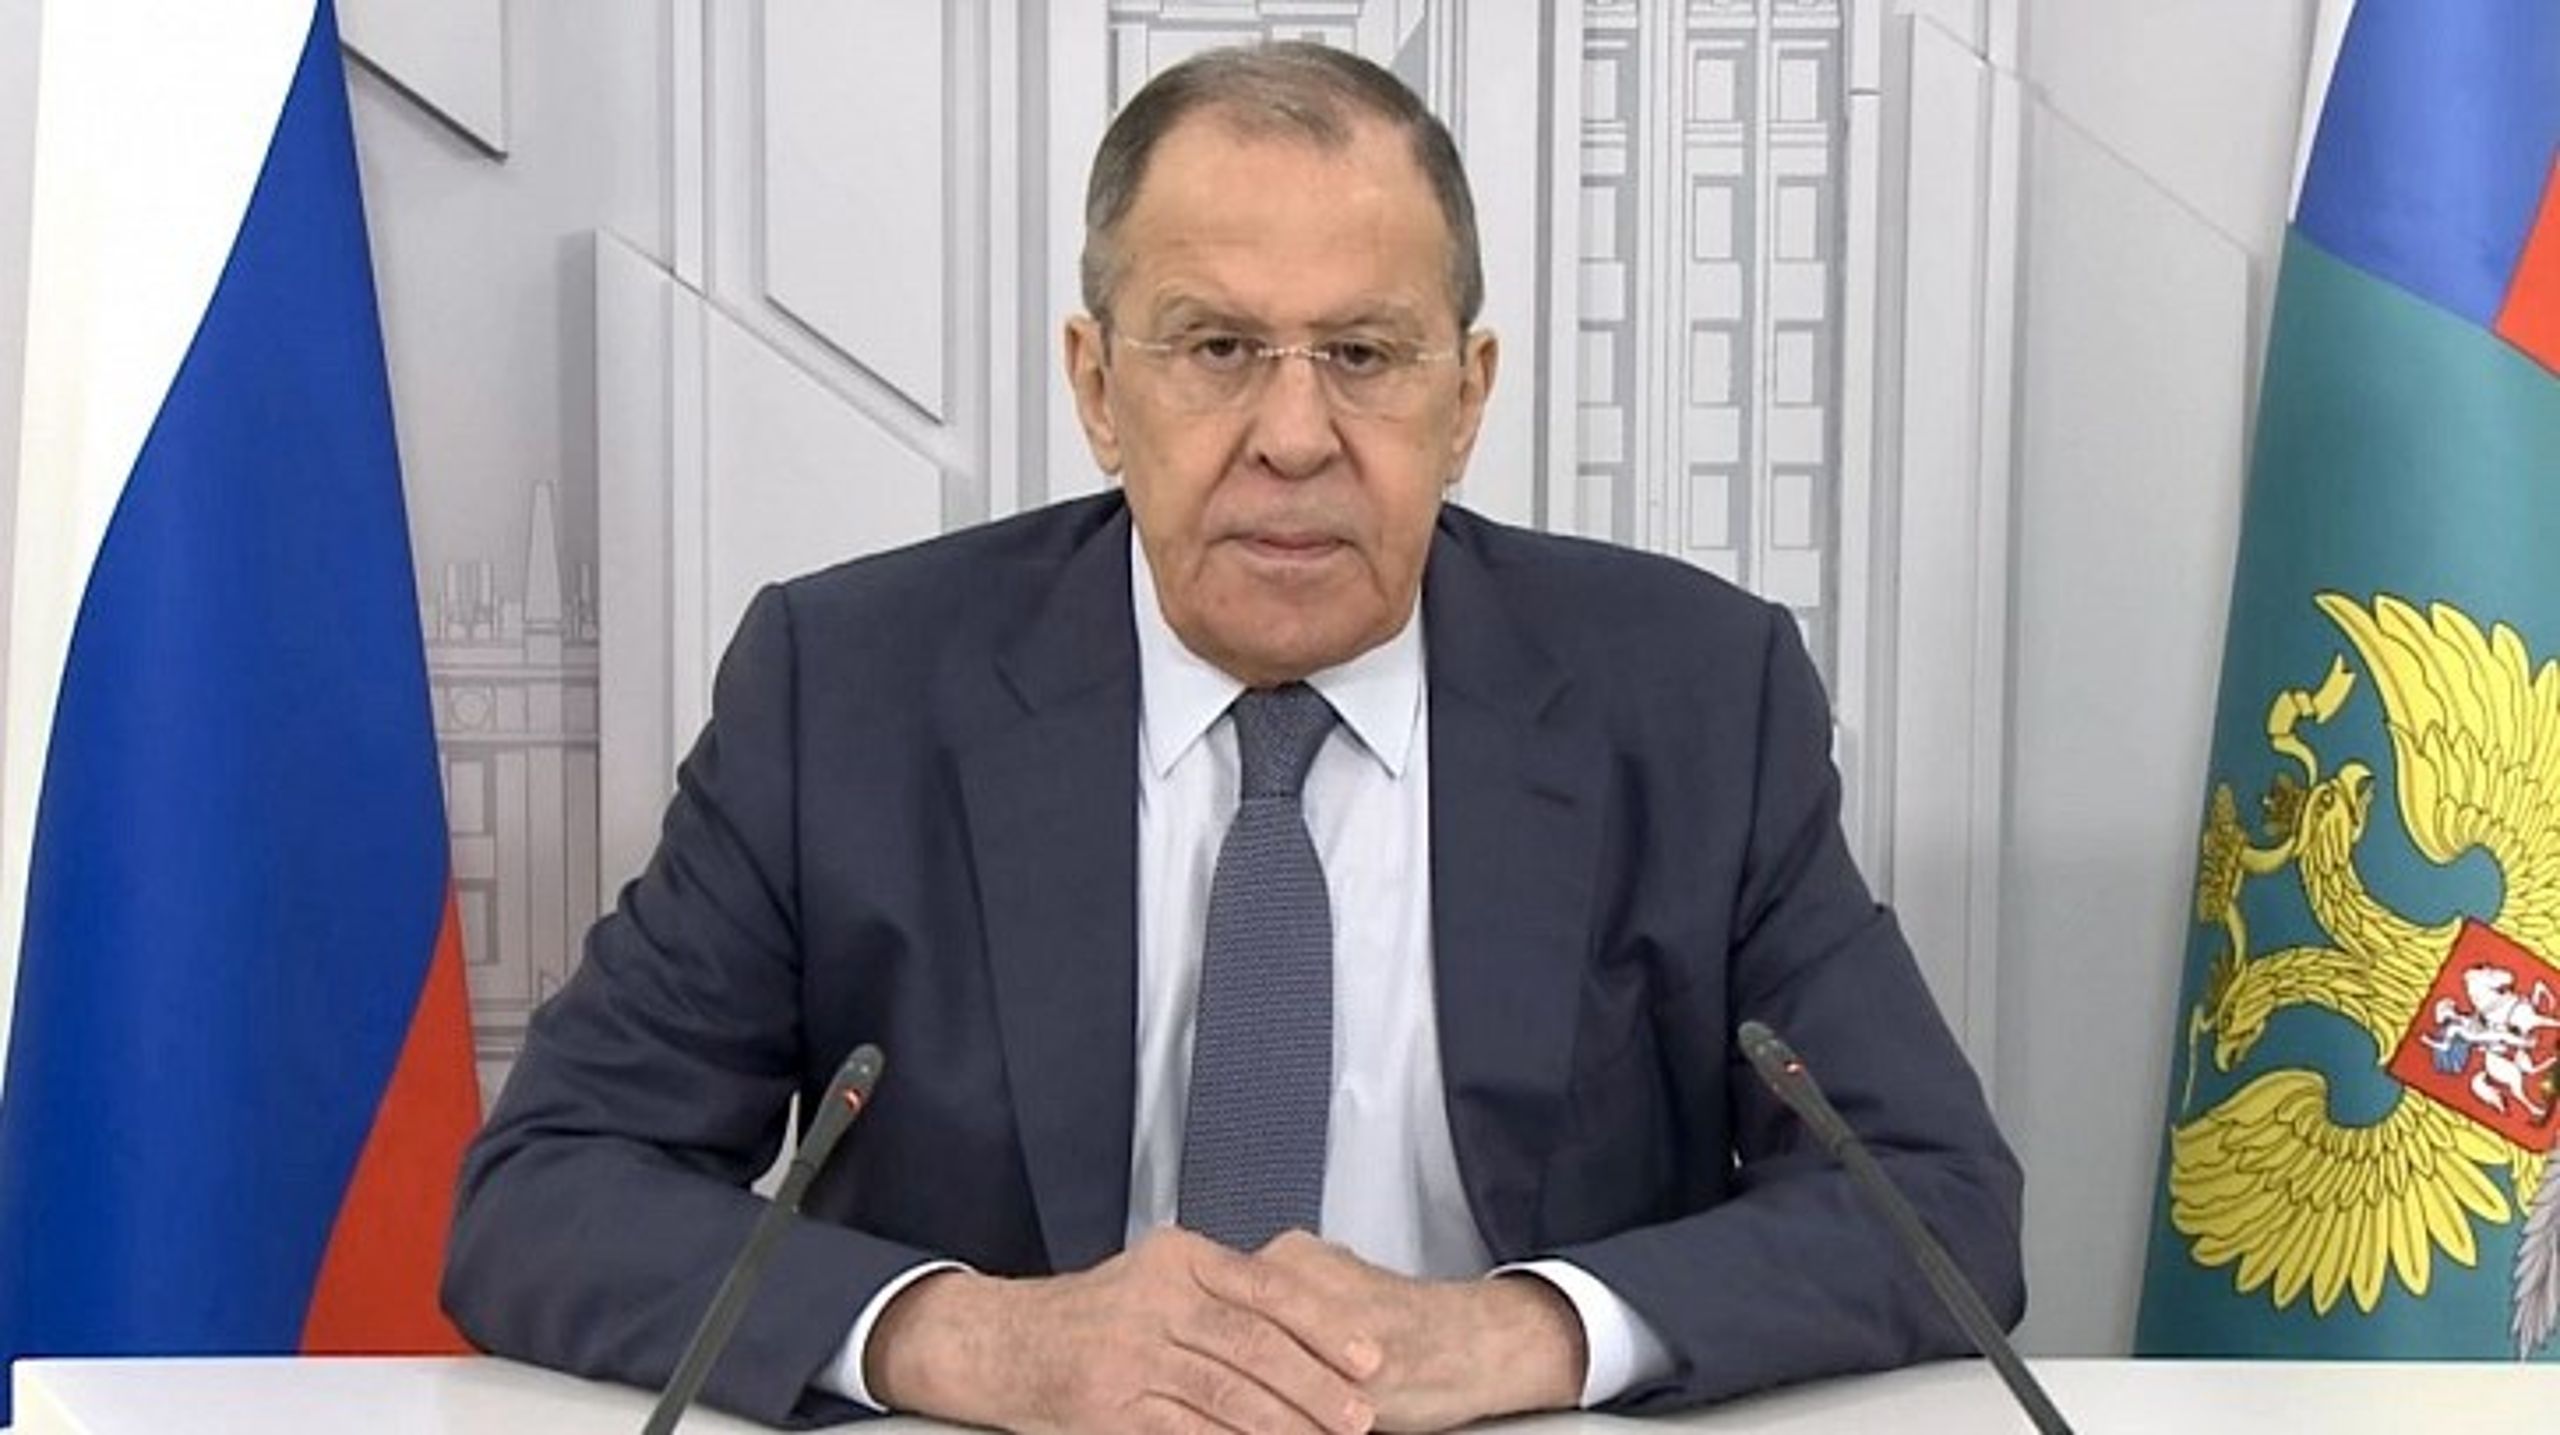 Ruslands udenrigsminister Sergey Lavrov talte ved Arktisk Råds ministermøde, hvor han var eneste deltagende udenrigsminister.